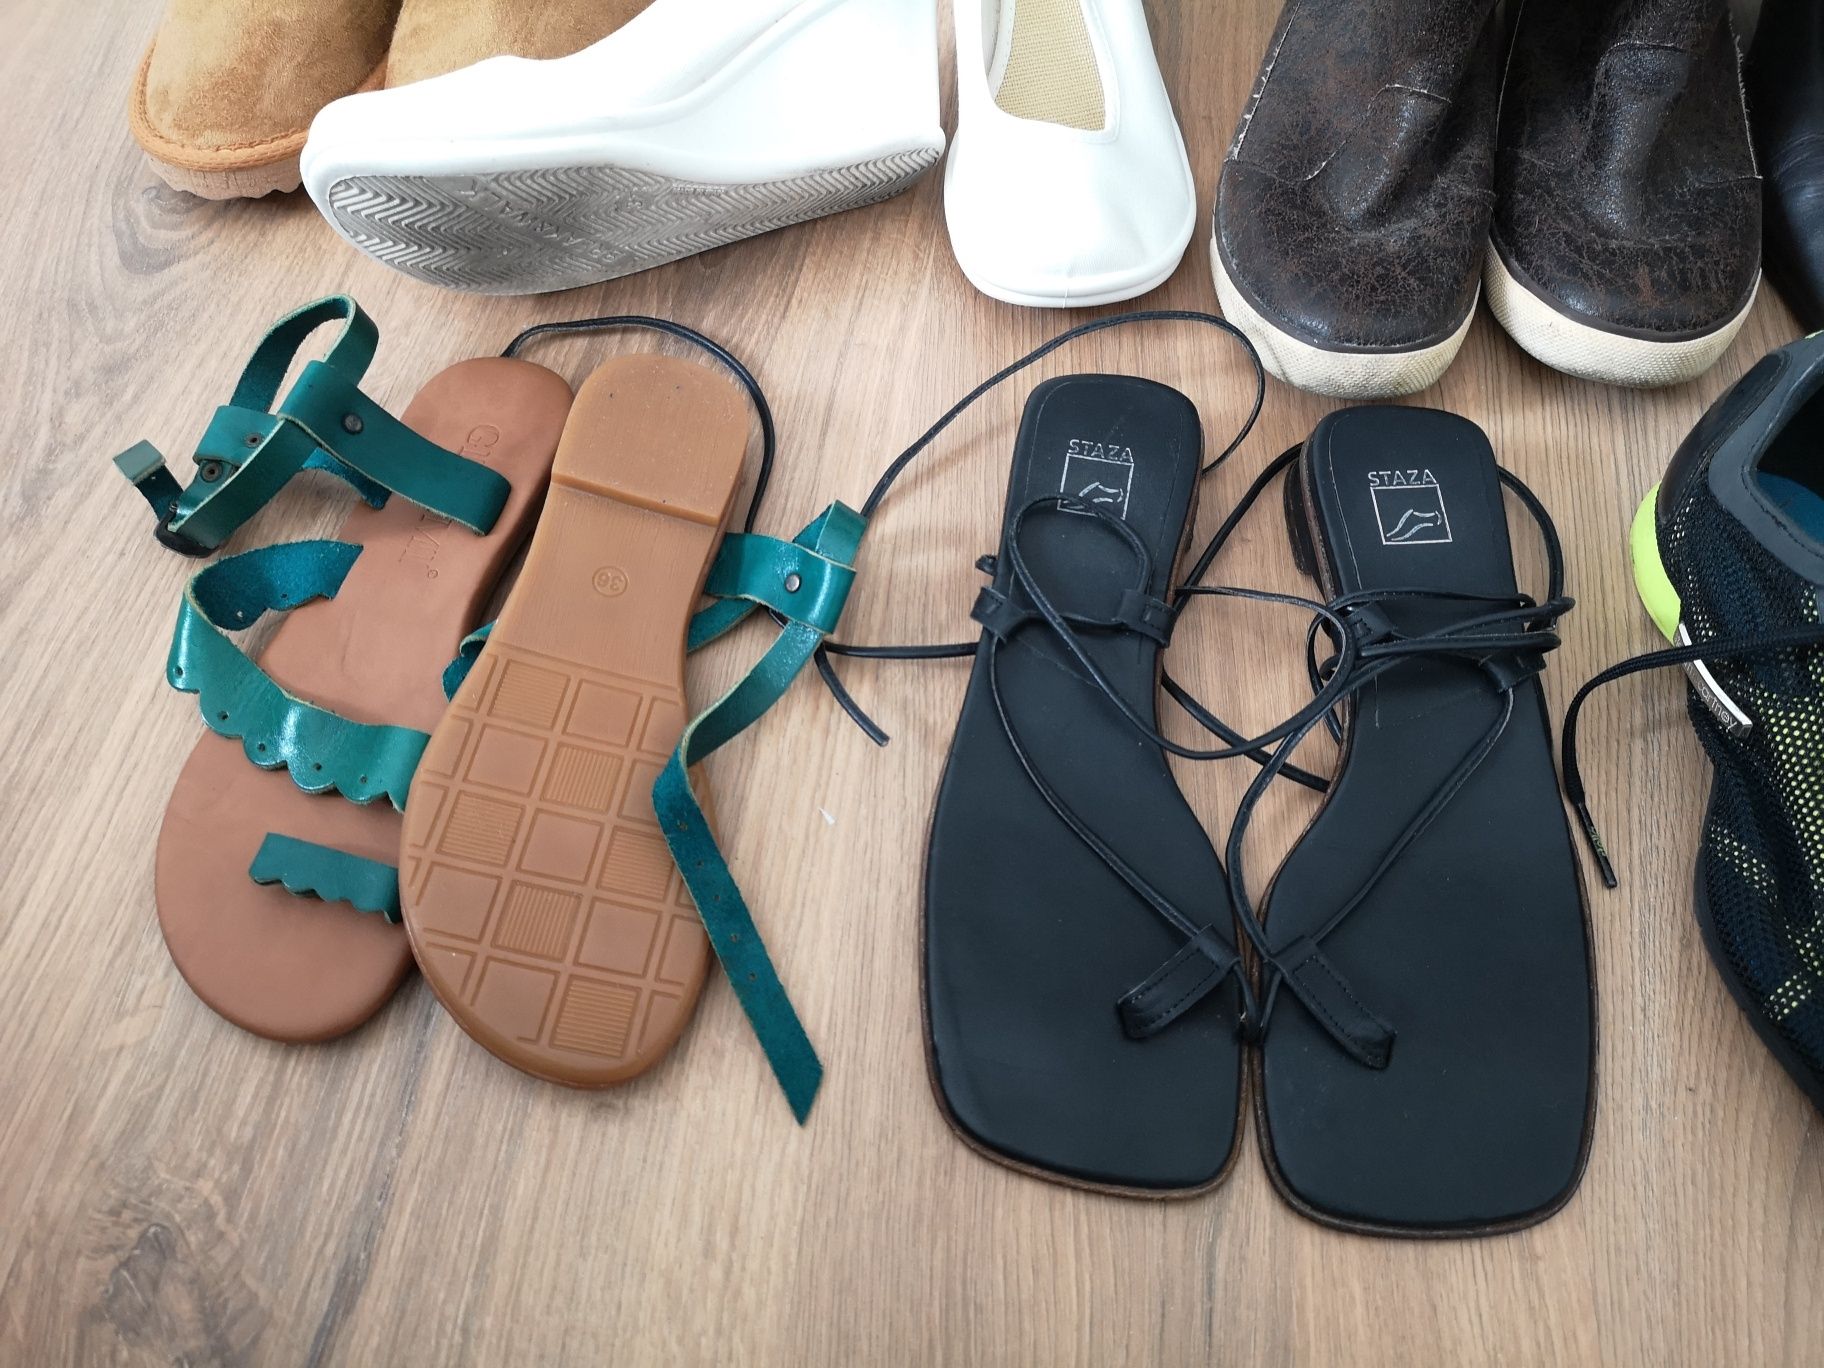 Vendo sapatos botas sandálias chinelas ténis baratas